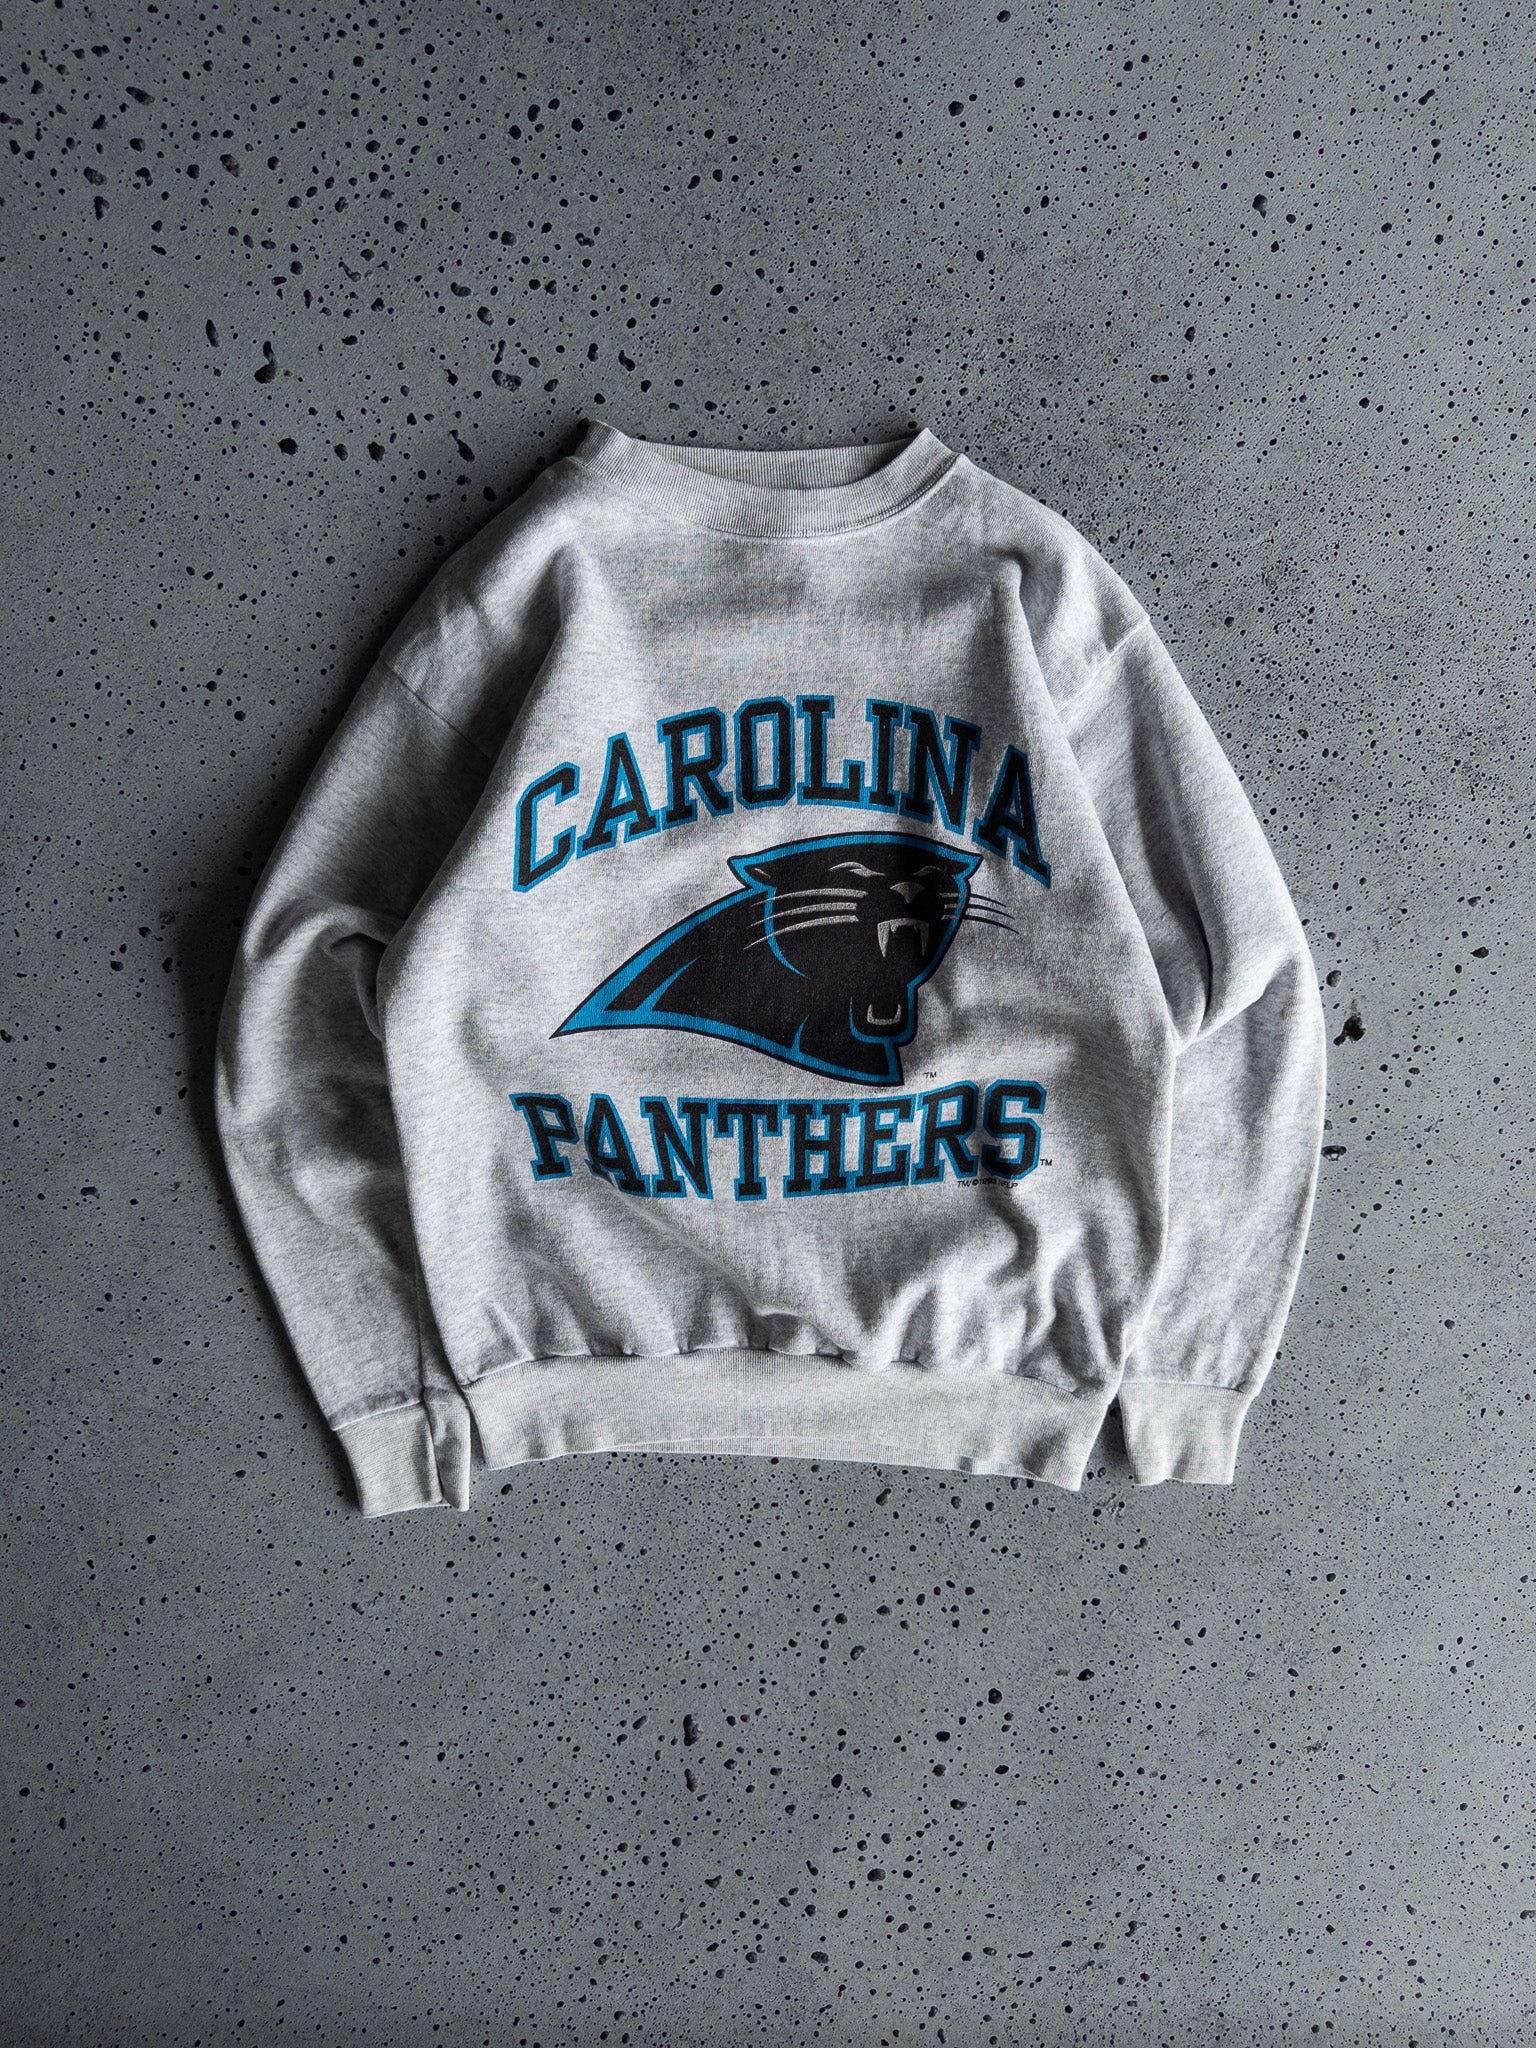 Vintage Carolina Panthers 1993 Sweatshirt (L)